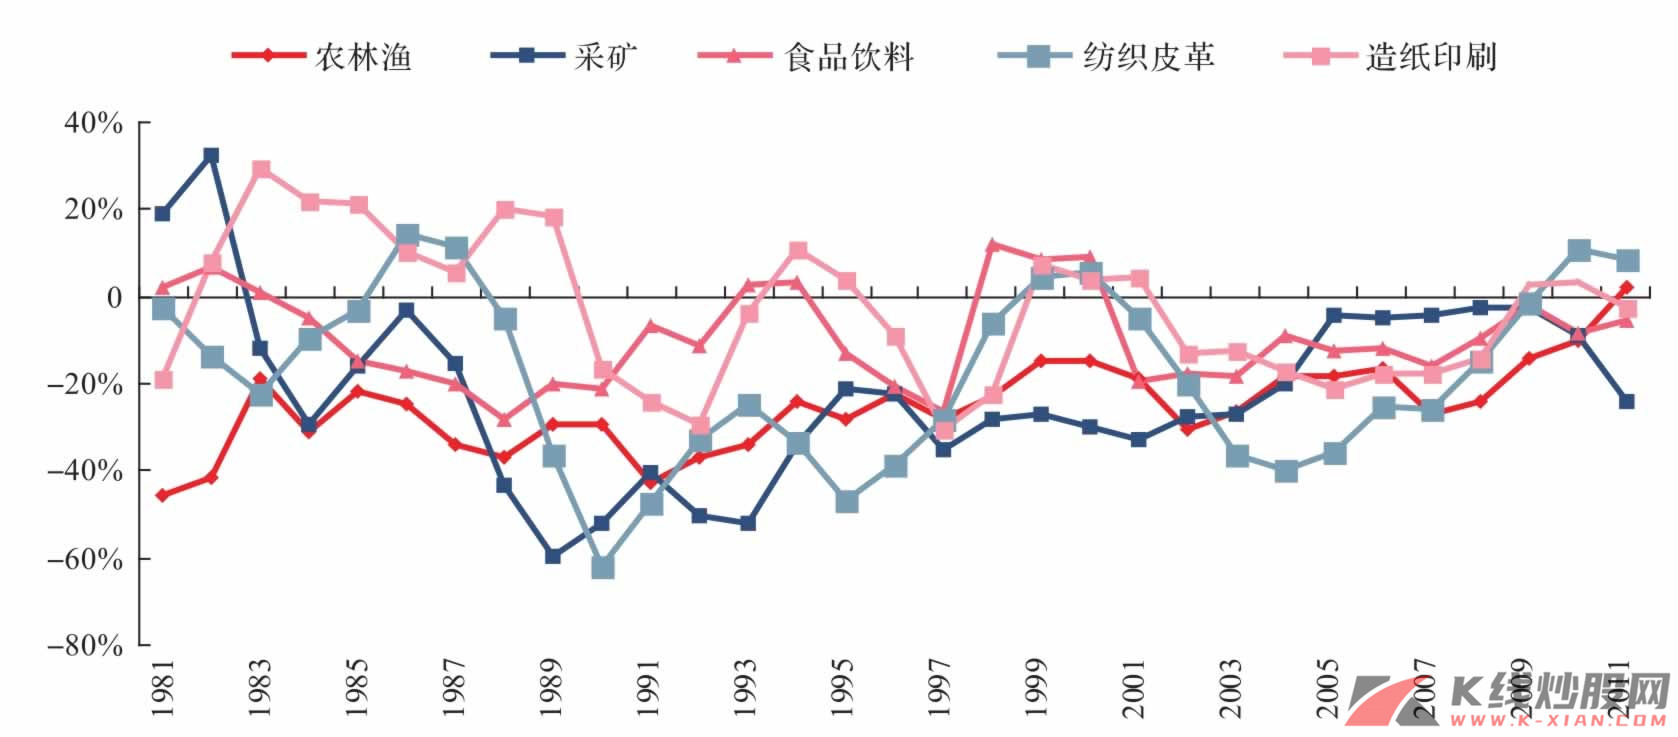 行业增加值增速减去GDP增速（三年累计）（韩国）——增速总是低于GDP增速的行业